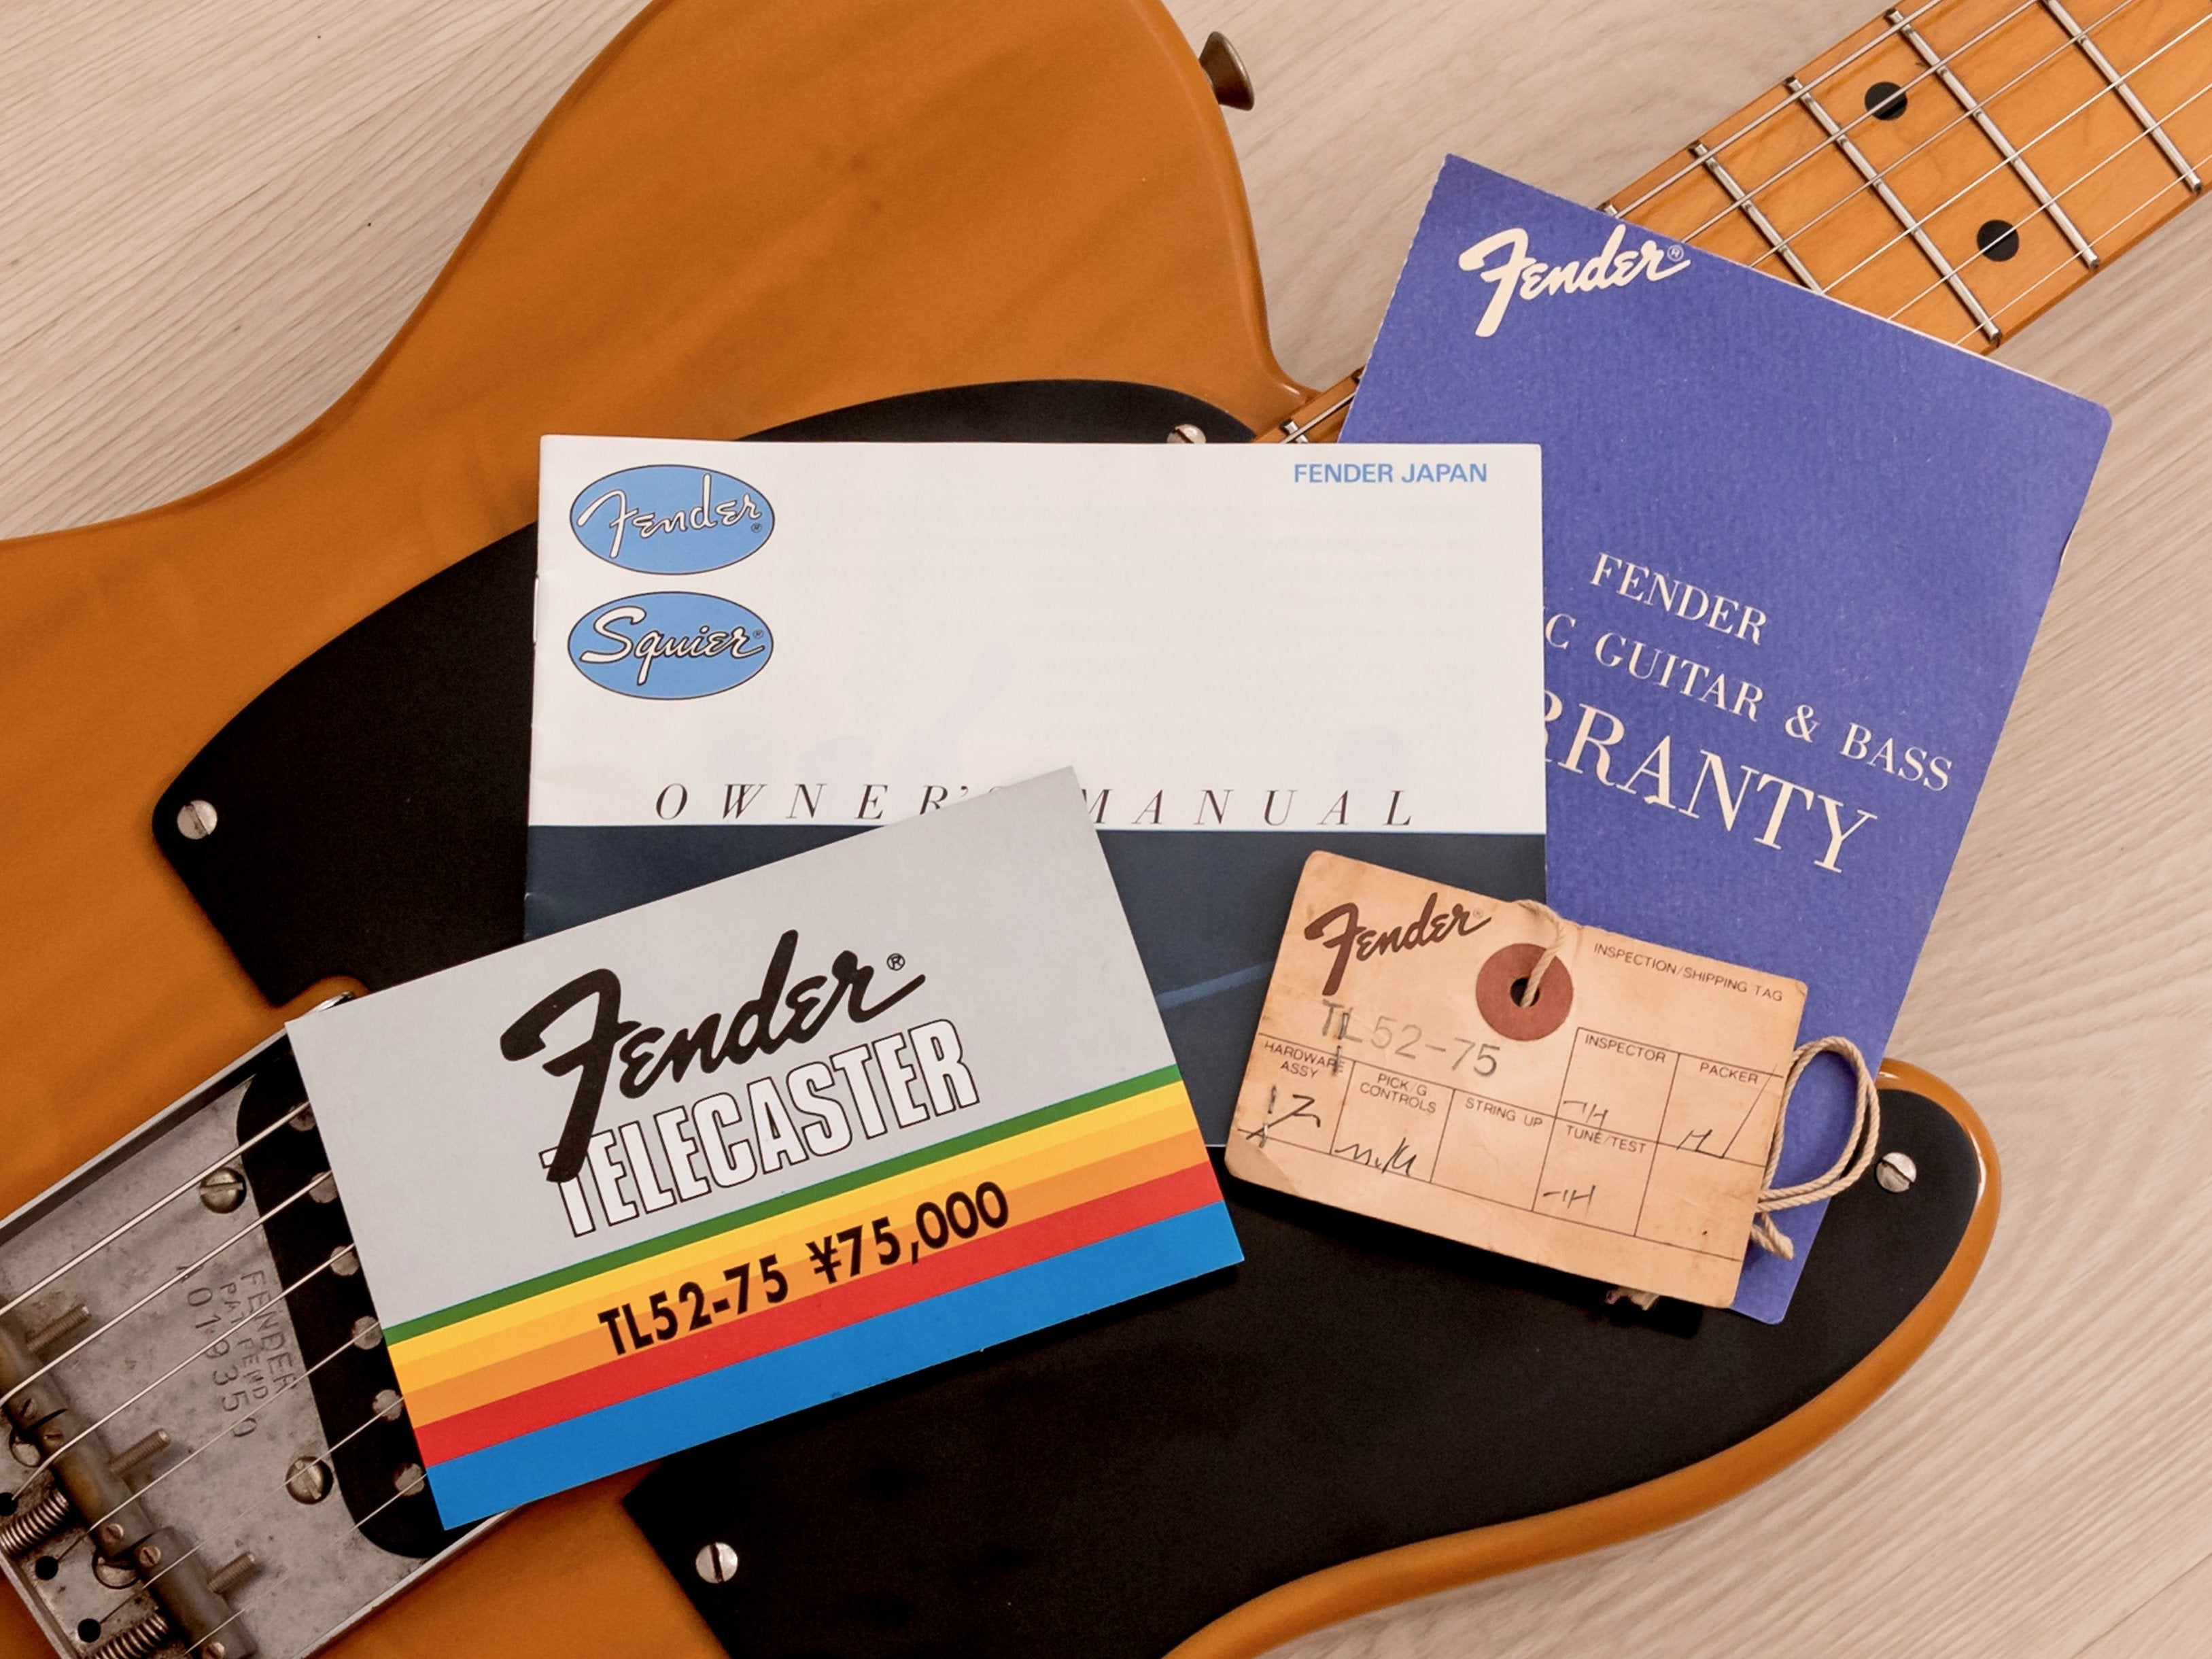 1986 Fender Telecaster '52 Vintage Reissue TL52-75 Butterscotch w/ Hangtags, Japan MIJ Fujigen